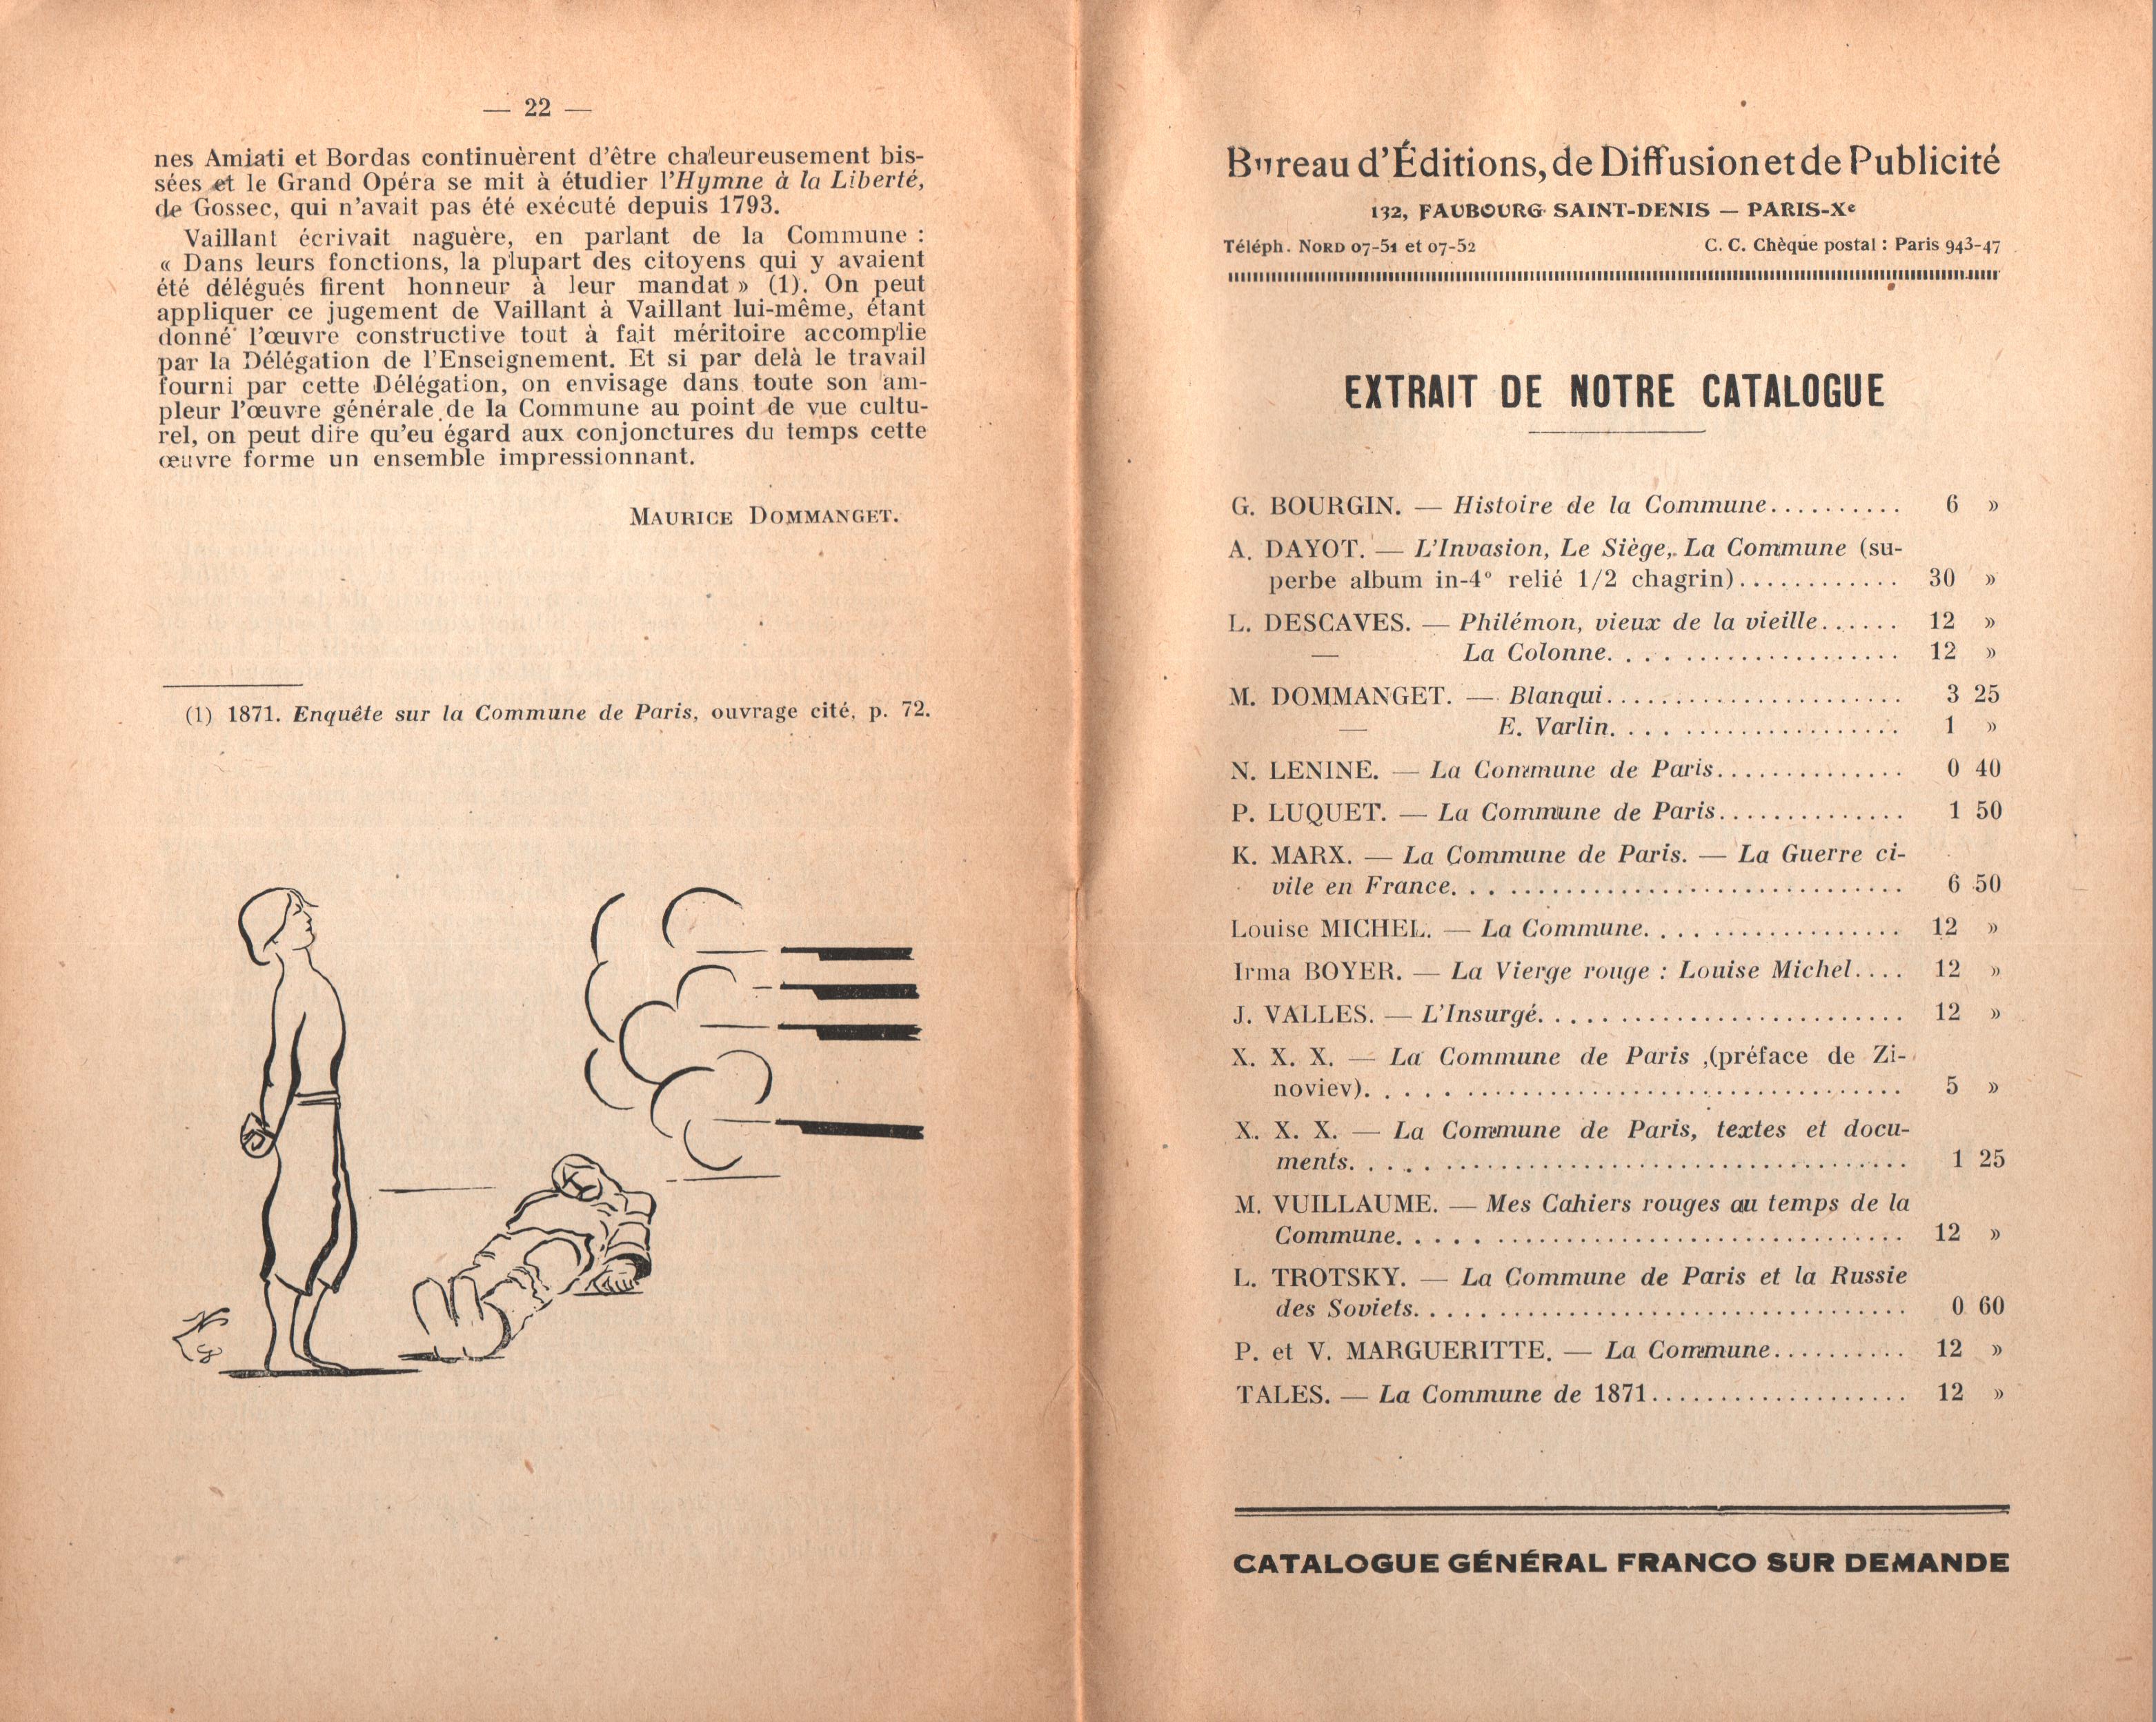 Maurice Dommanget, L'instruction publique sous la Commune - pag. 13